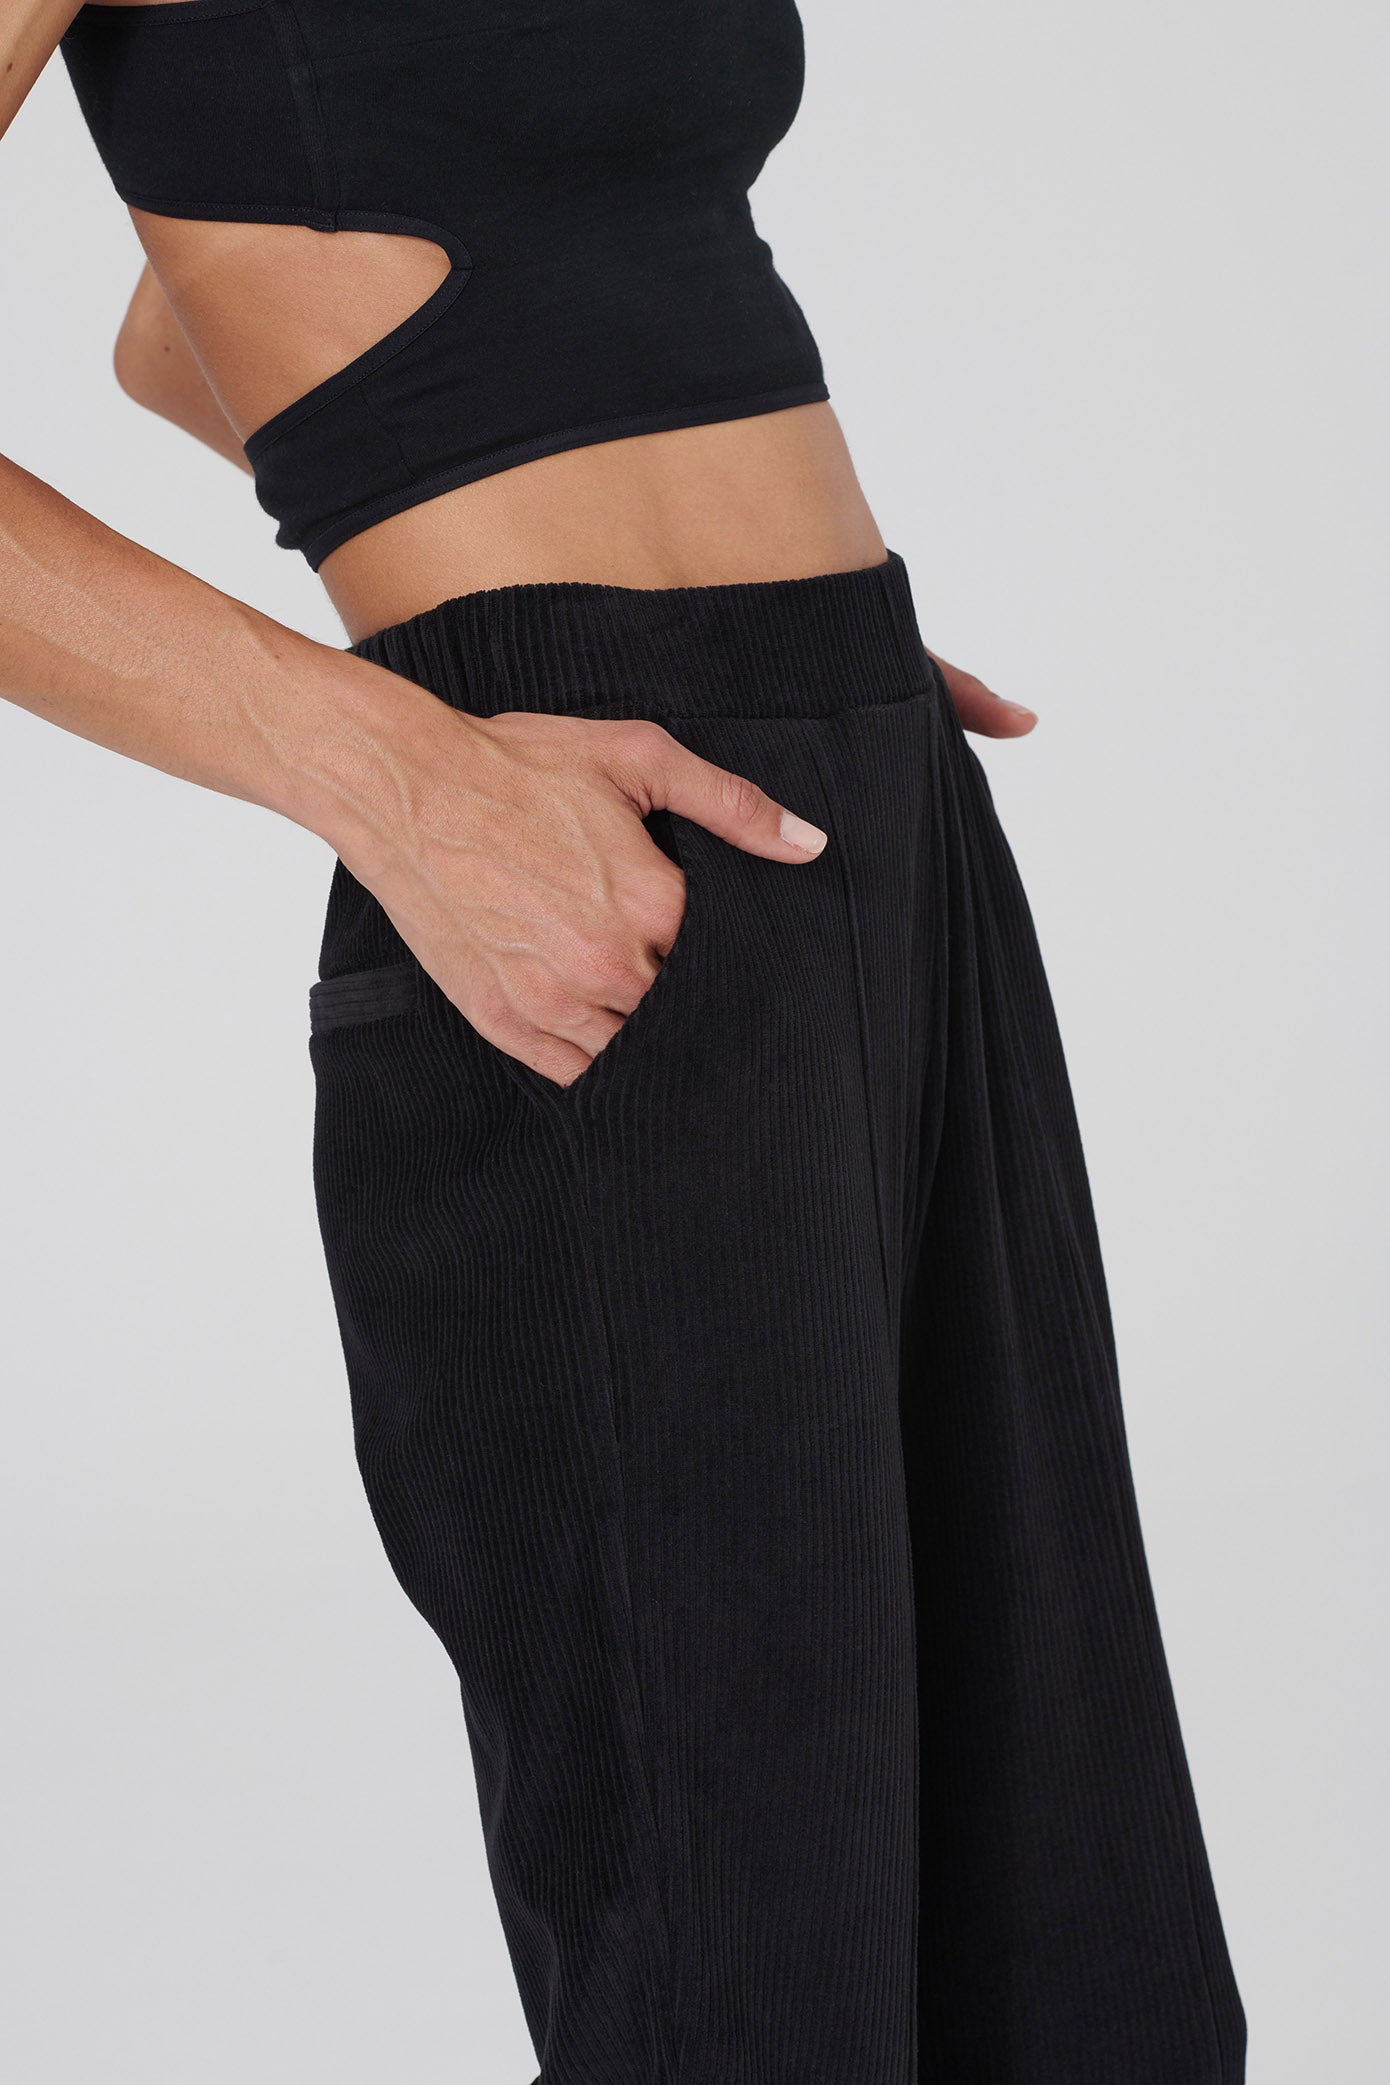 Pantalon de jogging THILDA noir de LOVJOI en coton biologique (ST)